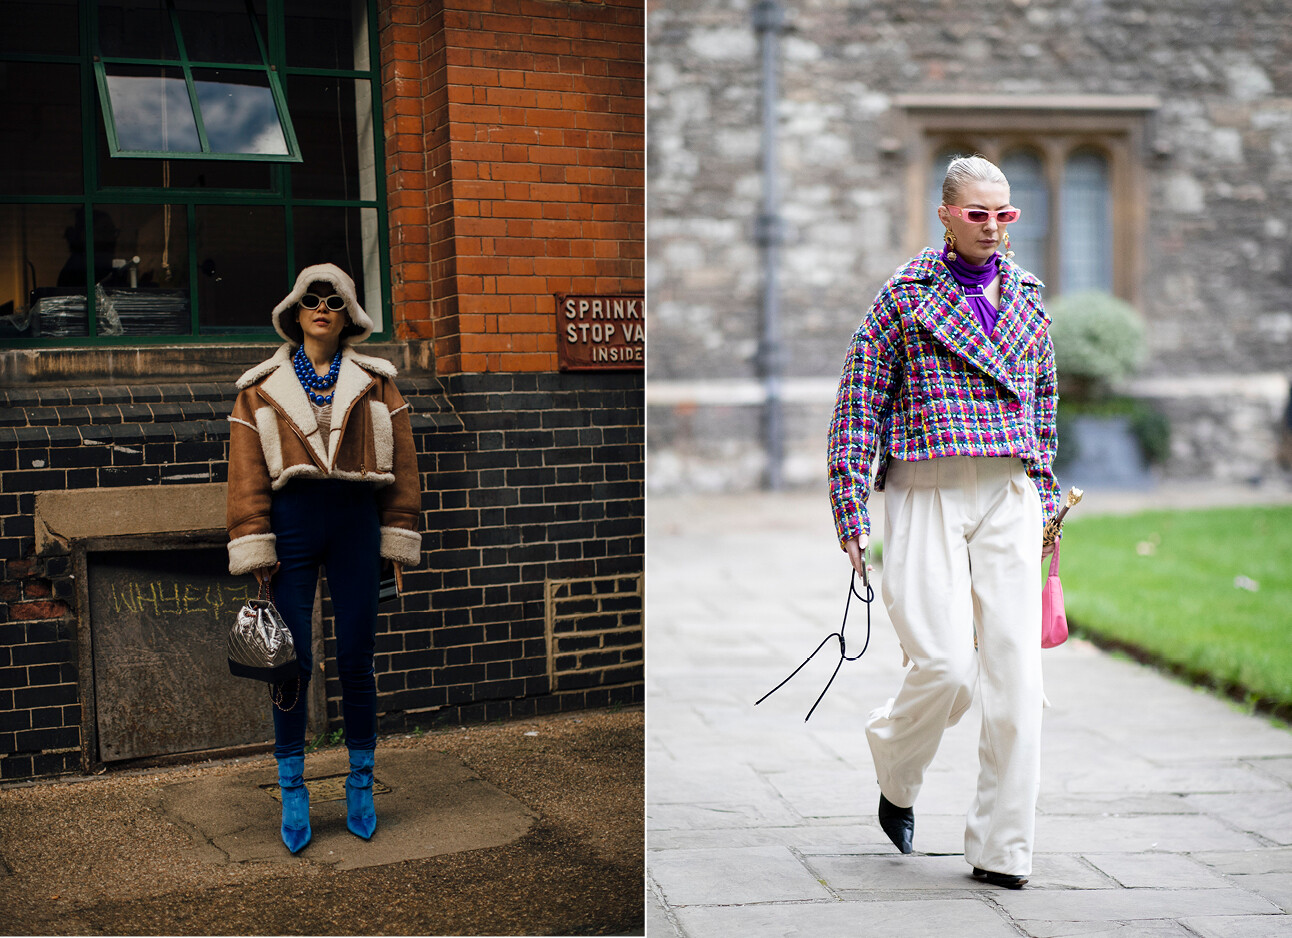 straatmodellen in style van de fashion week london